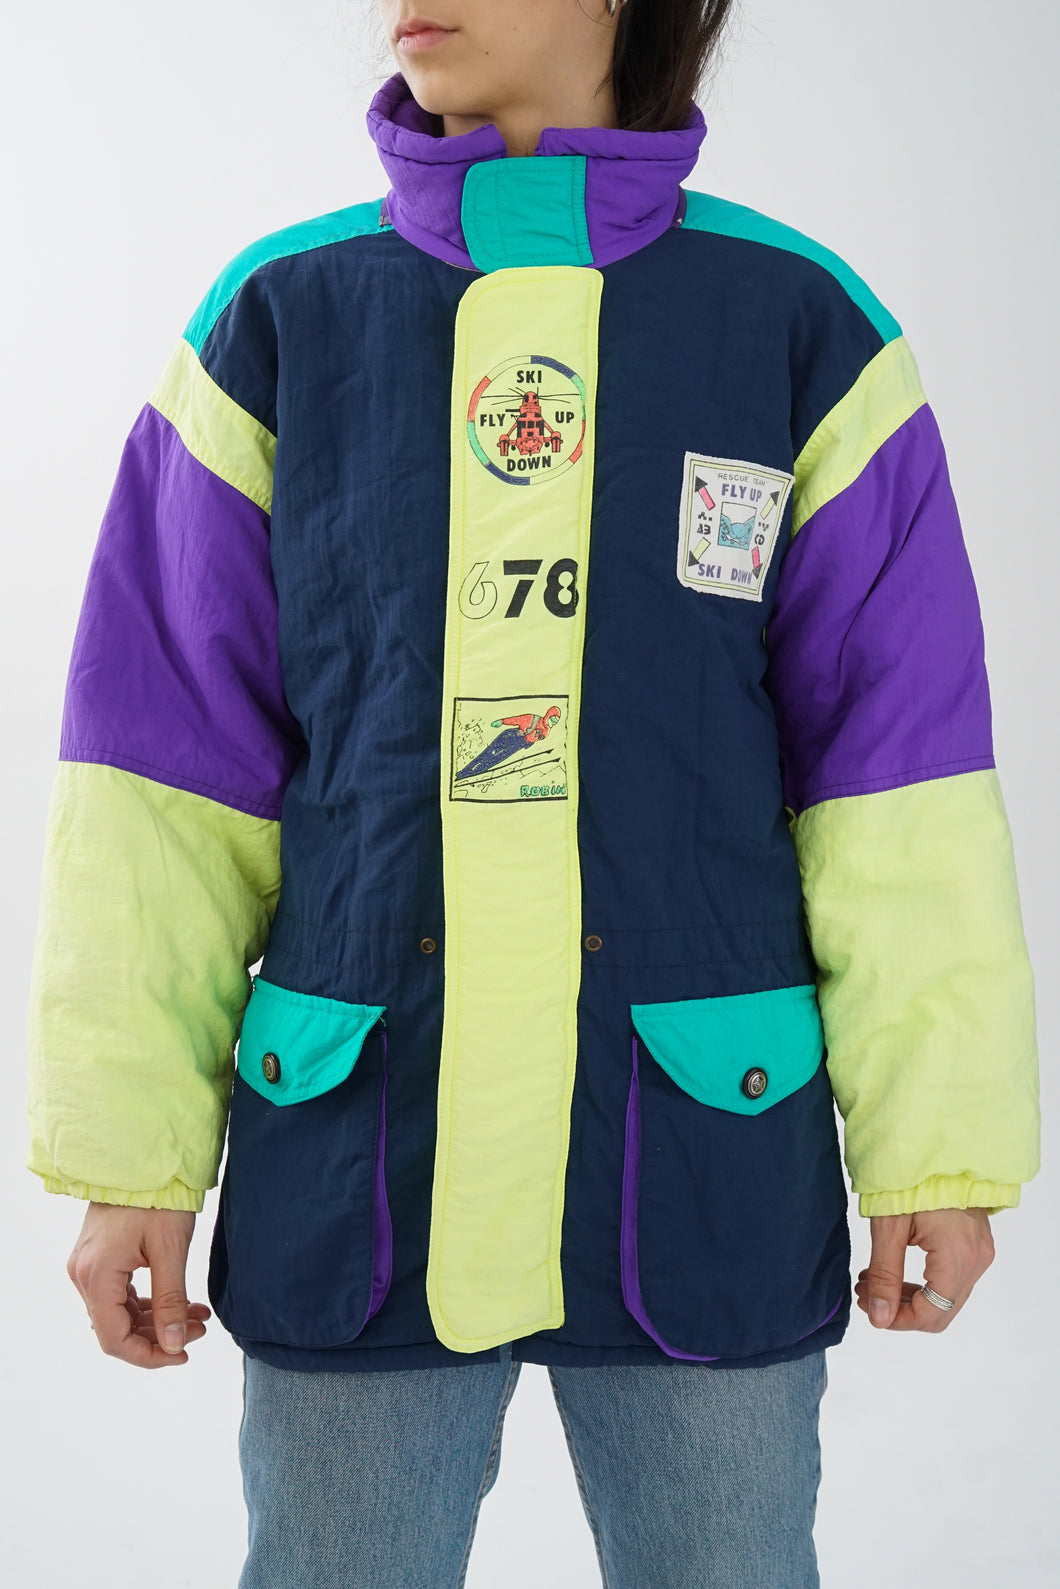 Manteau léger rétro ski Robin bleu et jaune fluo unisex taille S-M